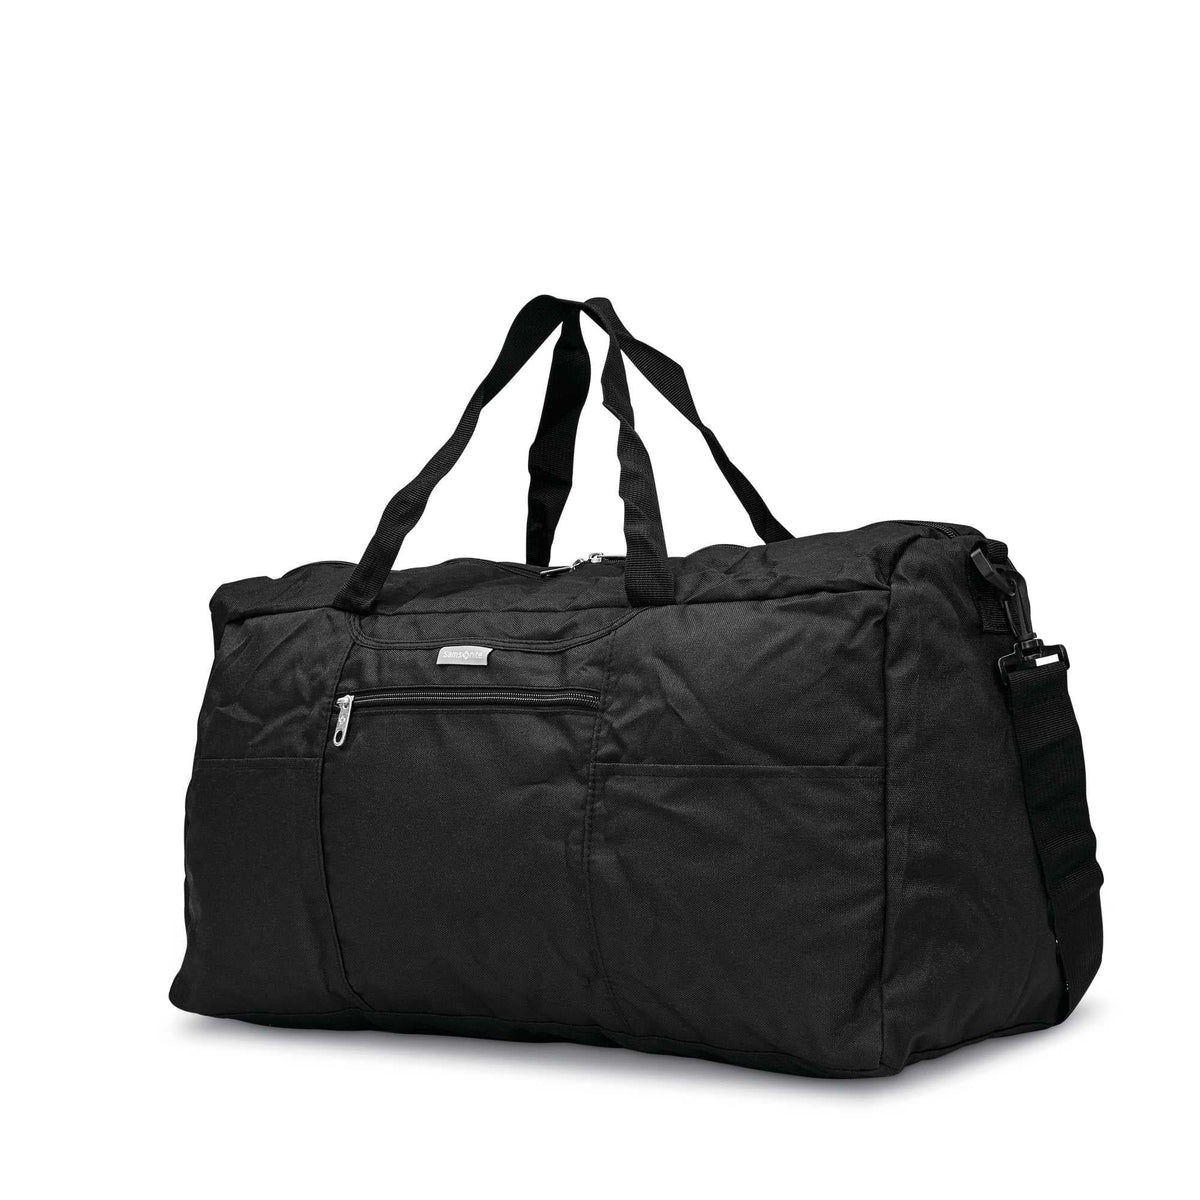 Samsonite Foldaway Duffle Bag Black